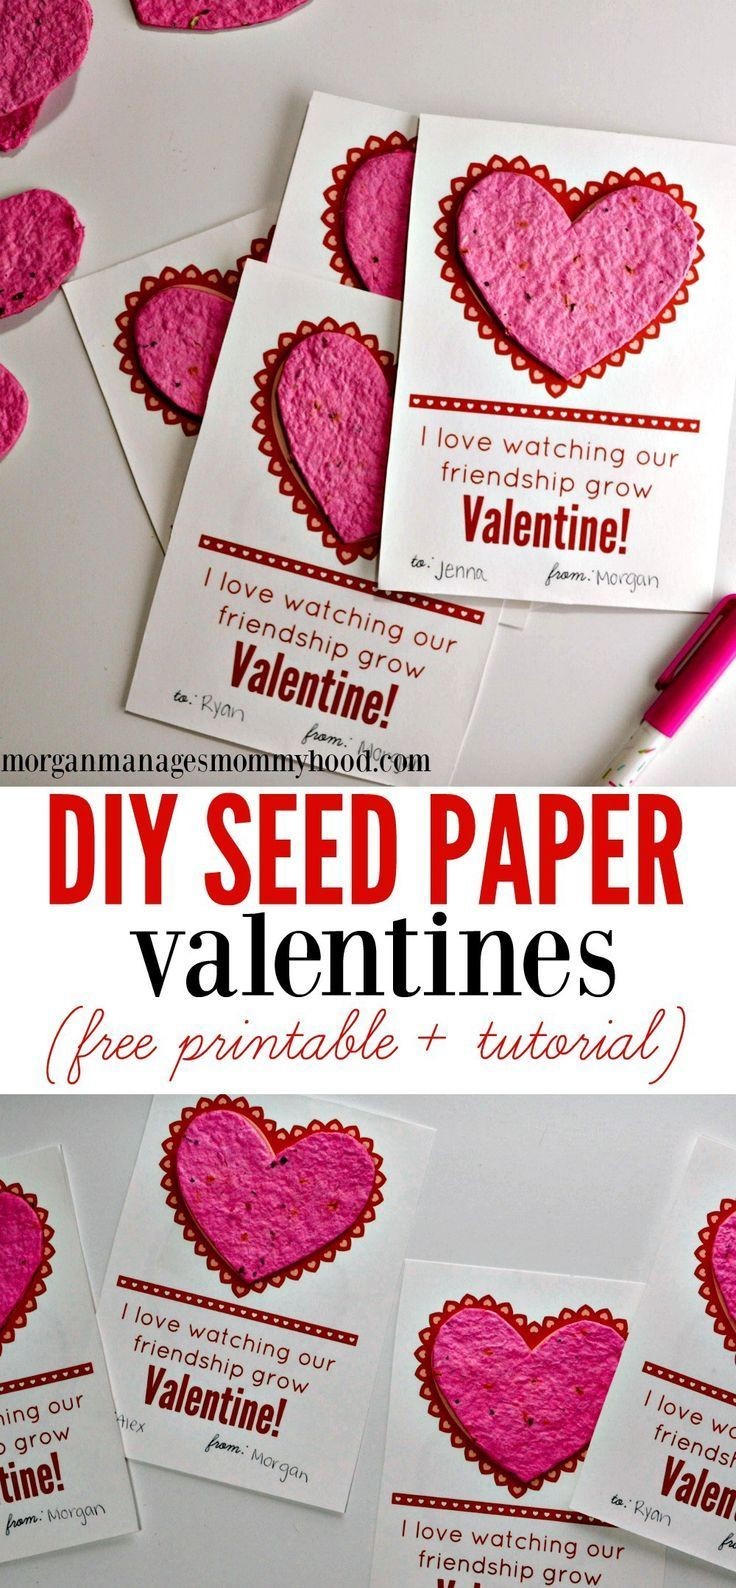 Valentine Papercraft Diy Seed Paper Valentines Valentine S Day Fun Pinterest